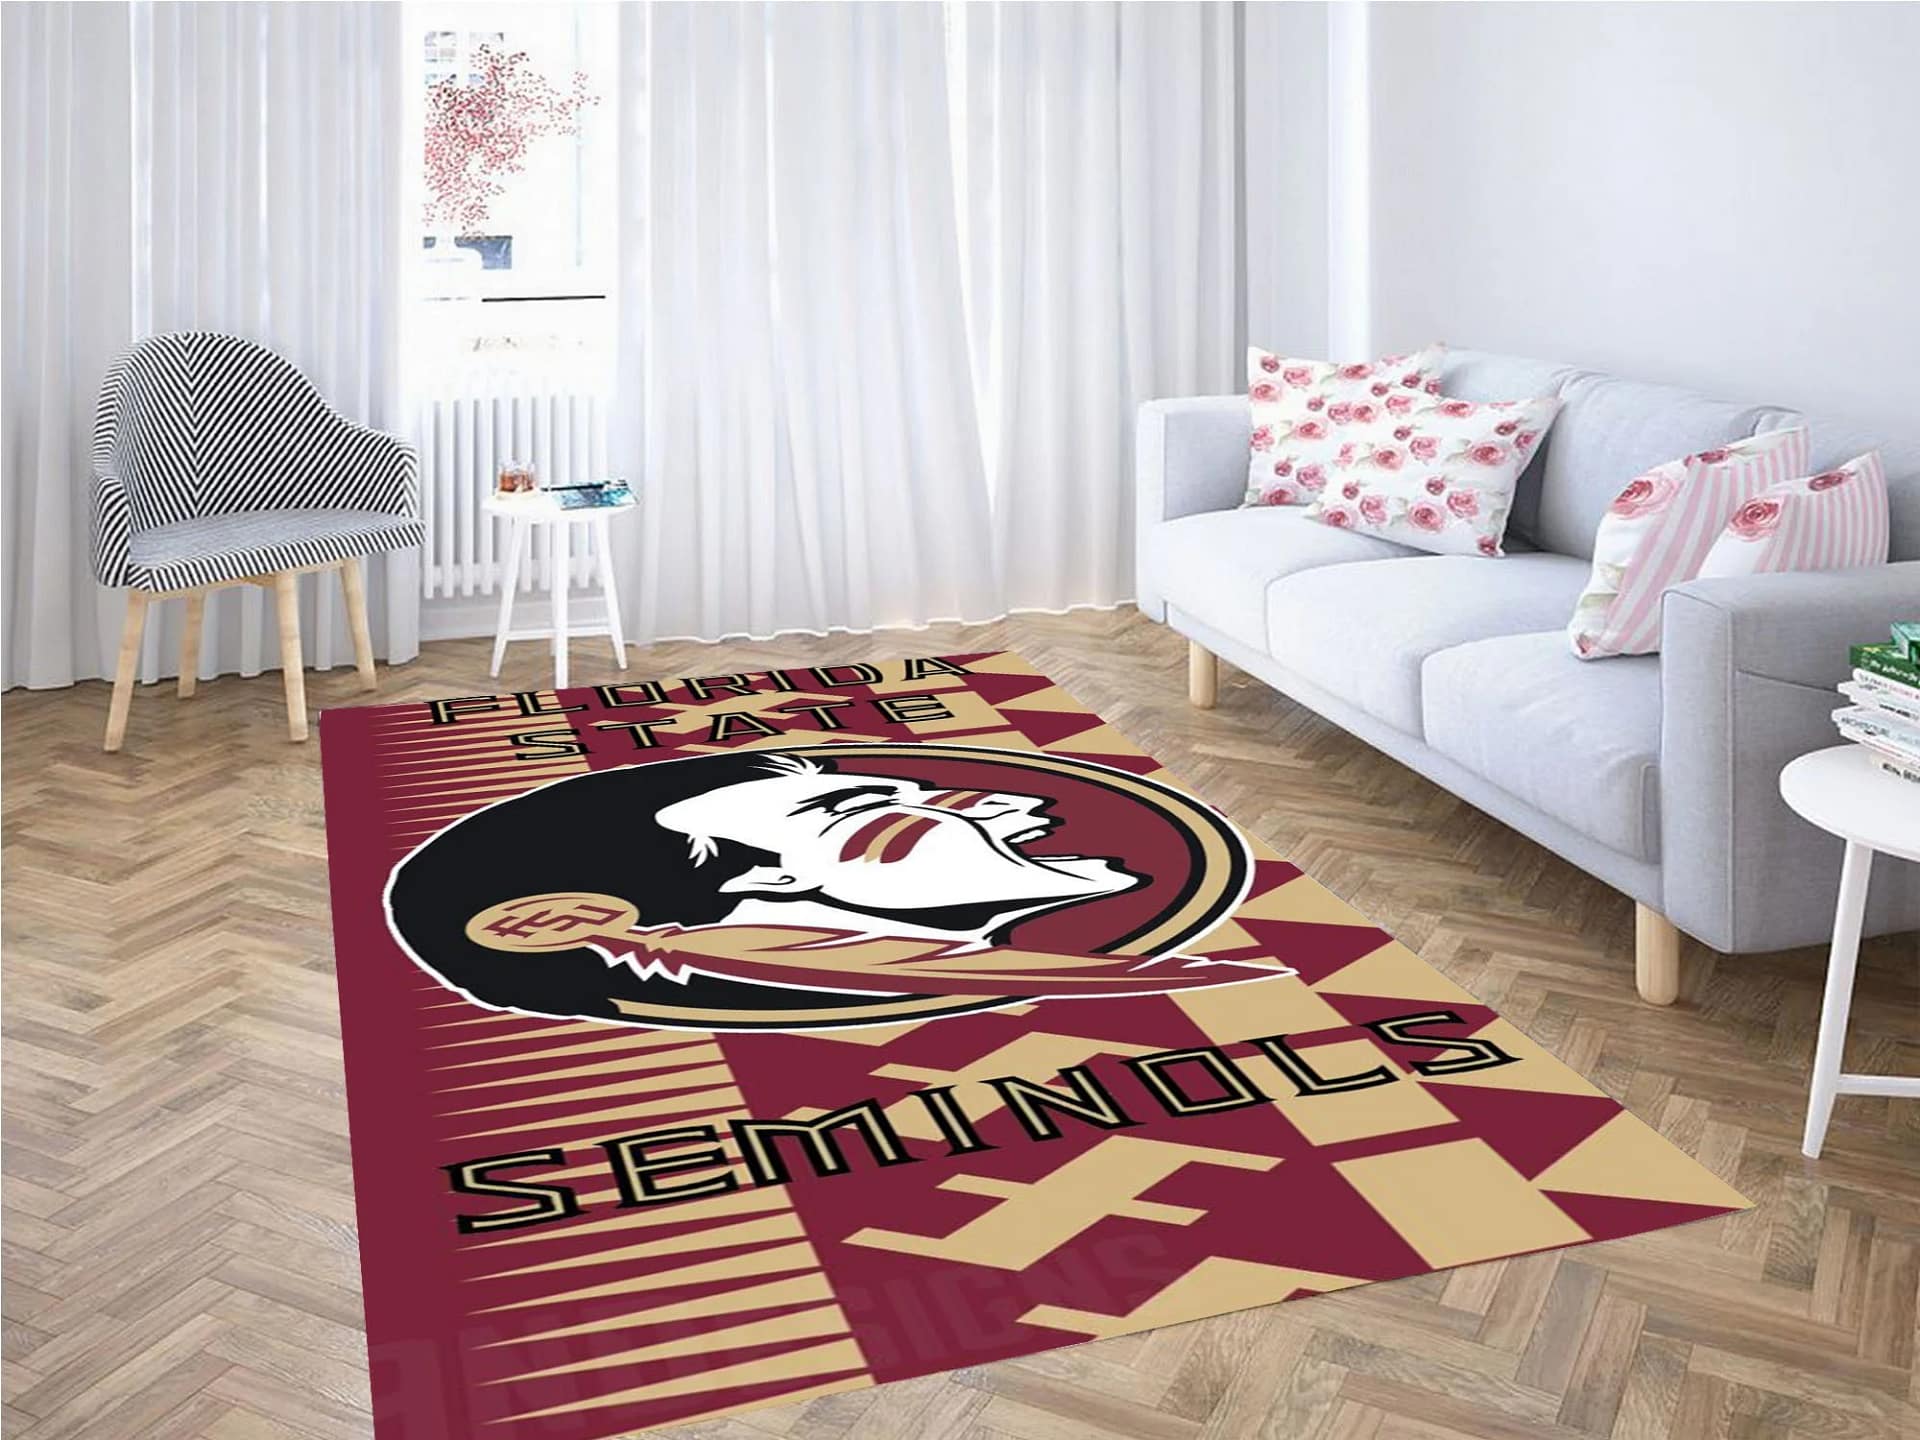 Florida State Seminoles Carpet Rug